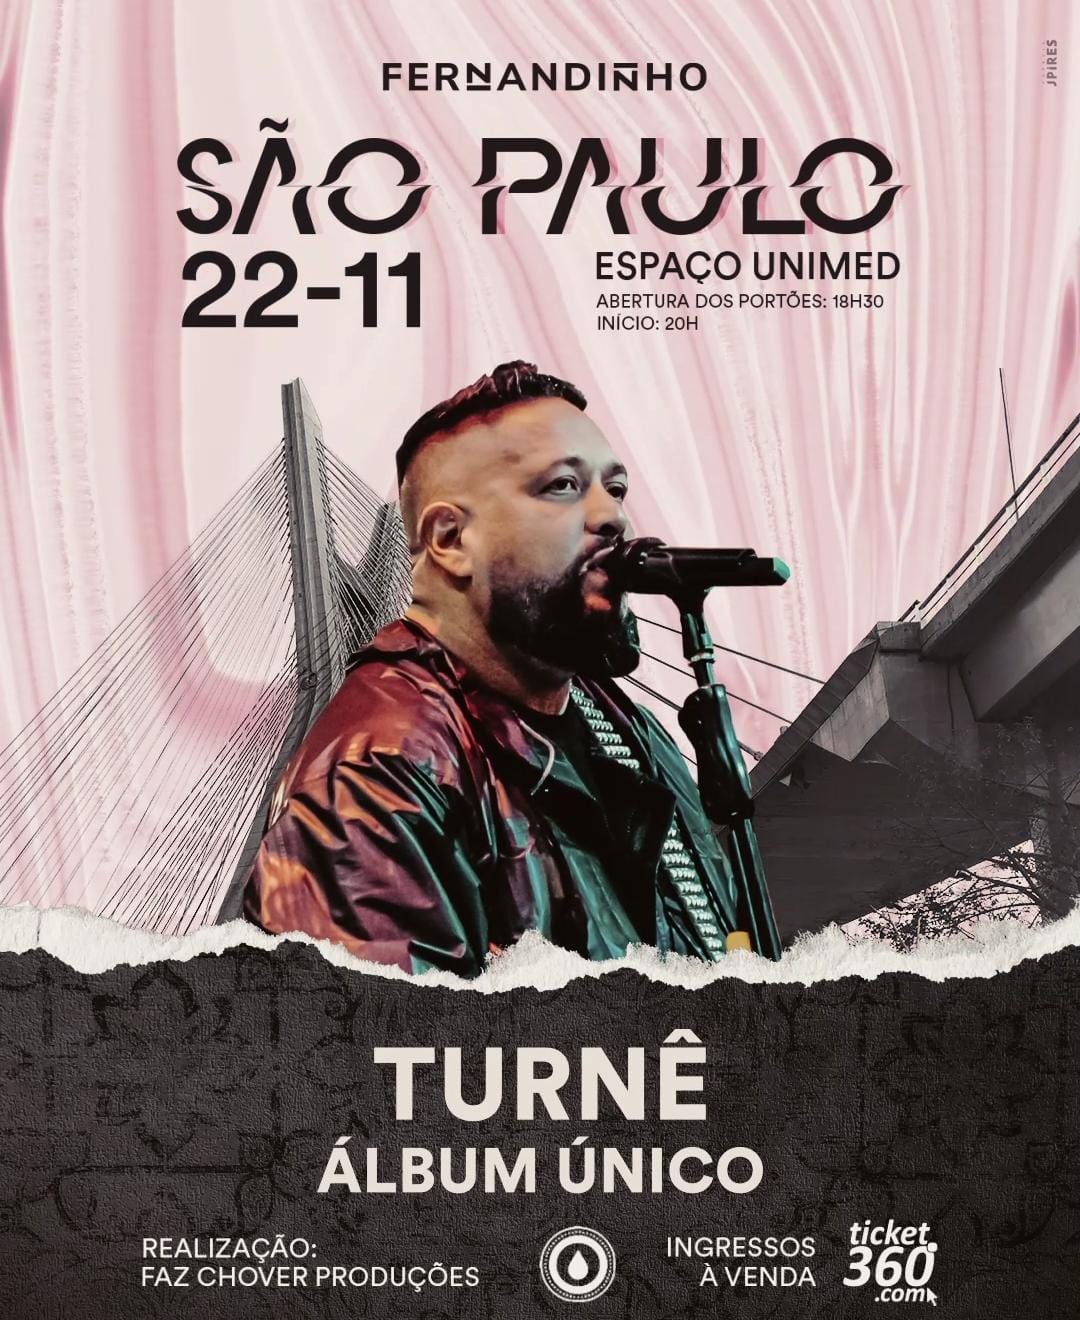 Indicado pela primeira vez ao Grammy Latino, Fernandinho se apresenta com o álbum “Único” no Espaço Unimed, em São Paulo